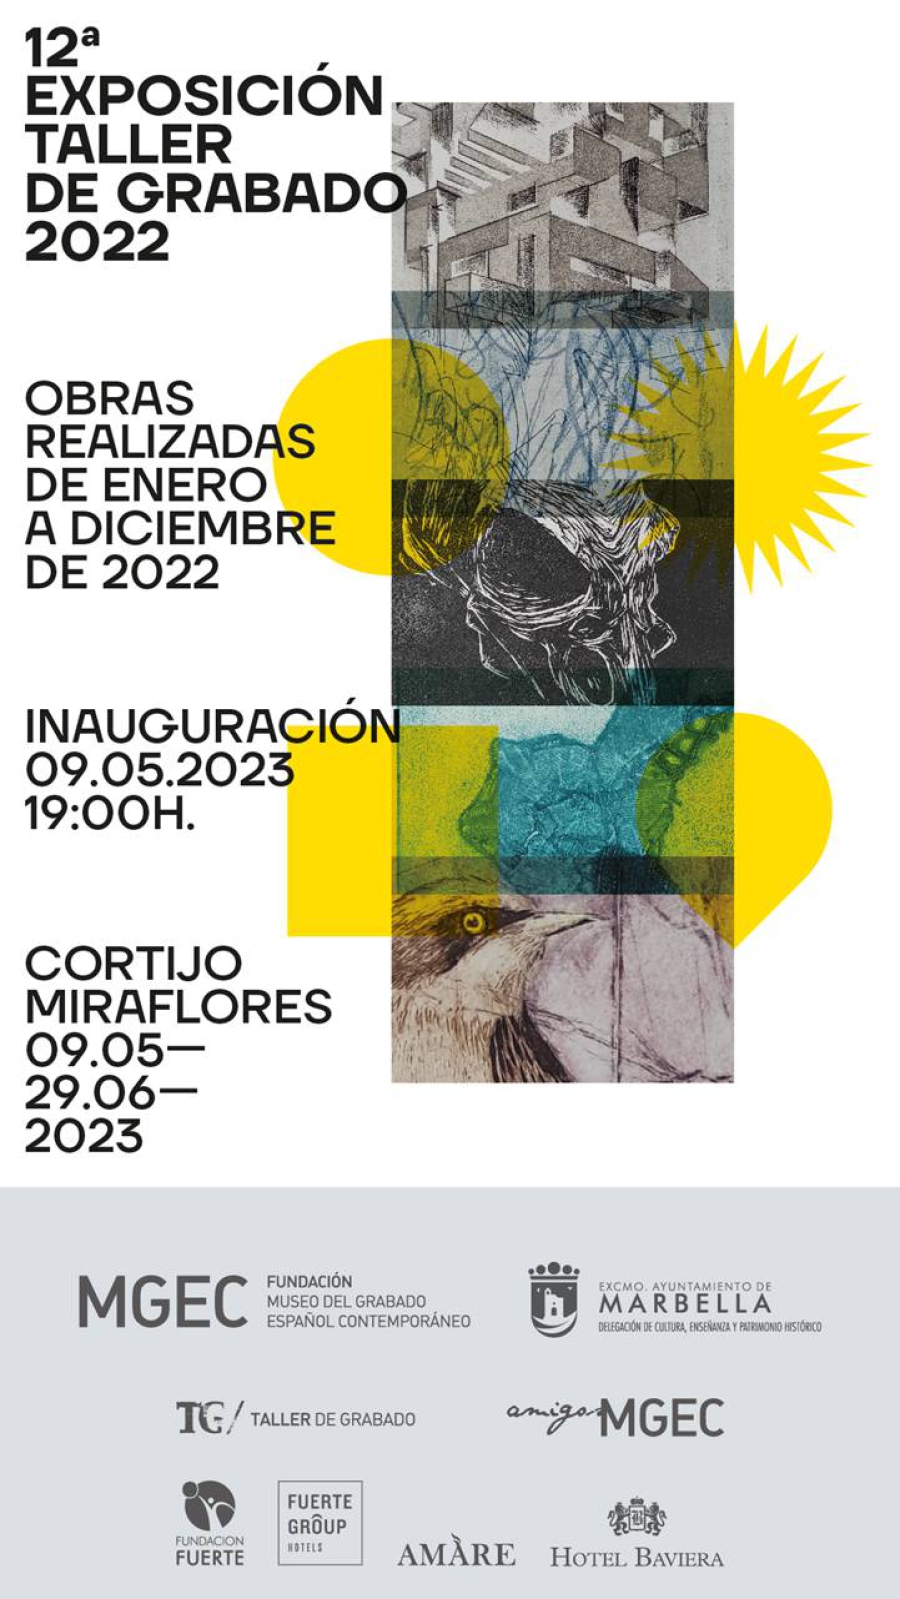 El Centro Cultural Cortijo Miraflores albergará desde el 9 de mayo la 12ª Exposición del Taller del Museo del Grabado Español Contemporáneo con 37 obras realizadas el pasado año